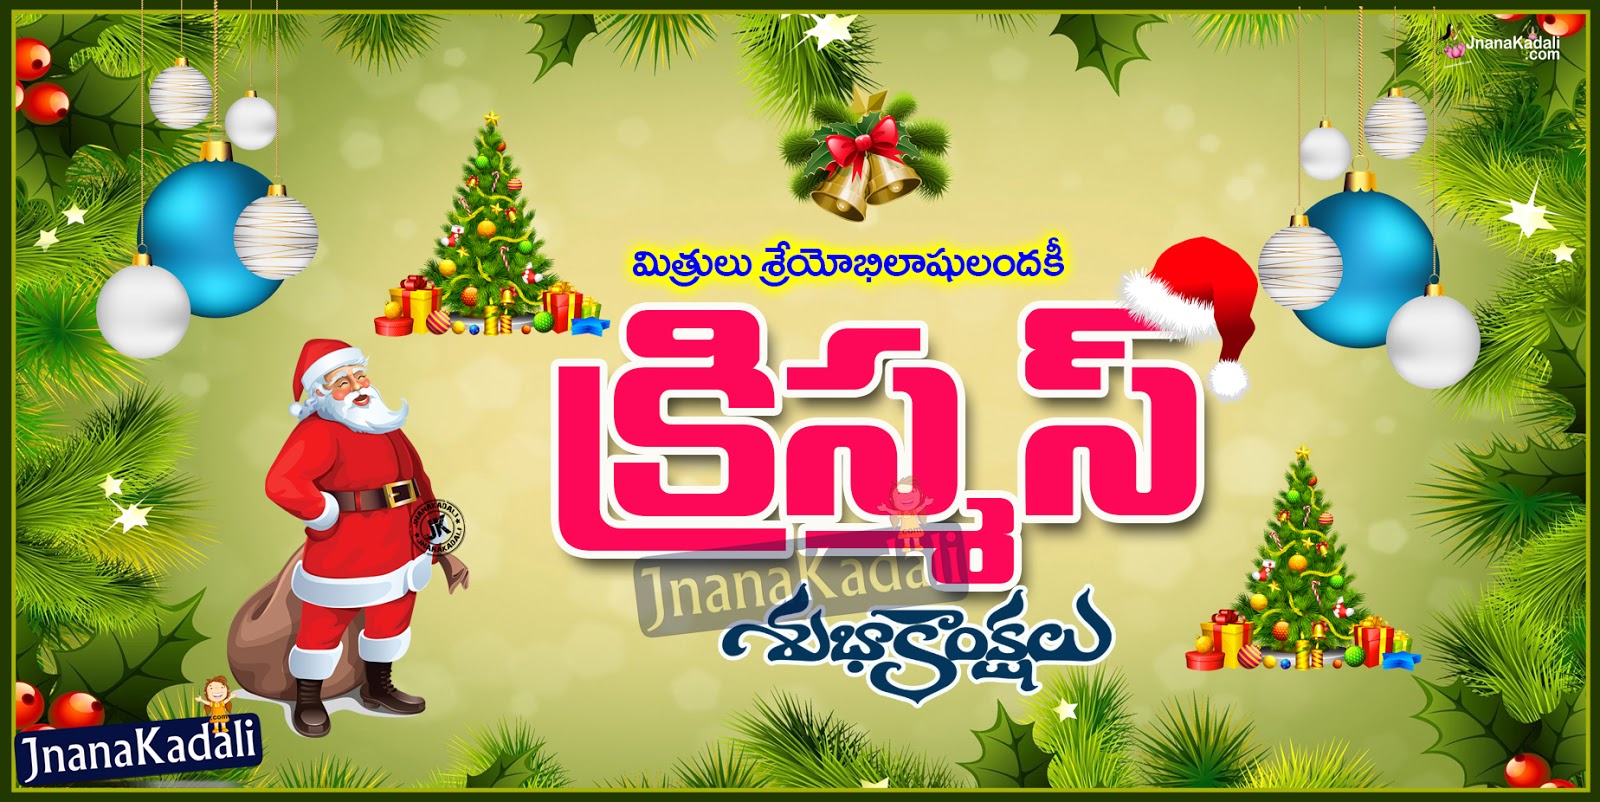 Best Telugu Christmas Greeting with jesus christ images | JNANA KADALI.COM |Telugu Quotes ...